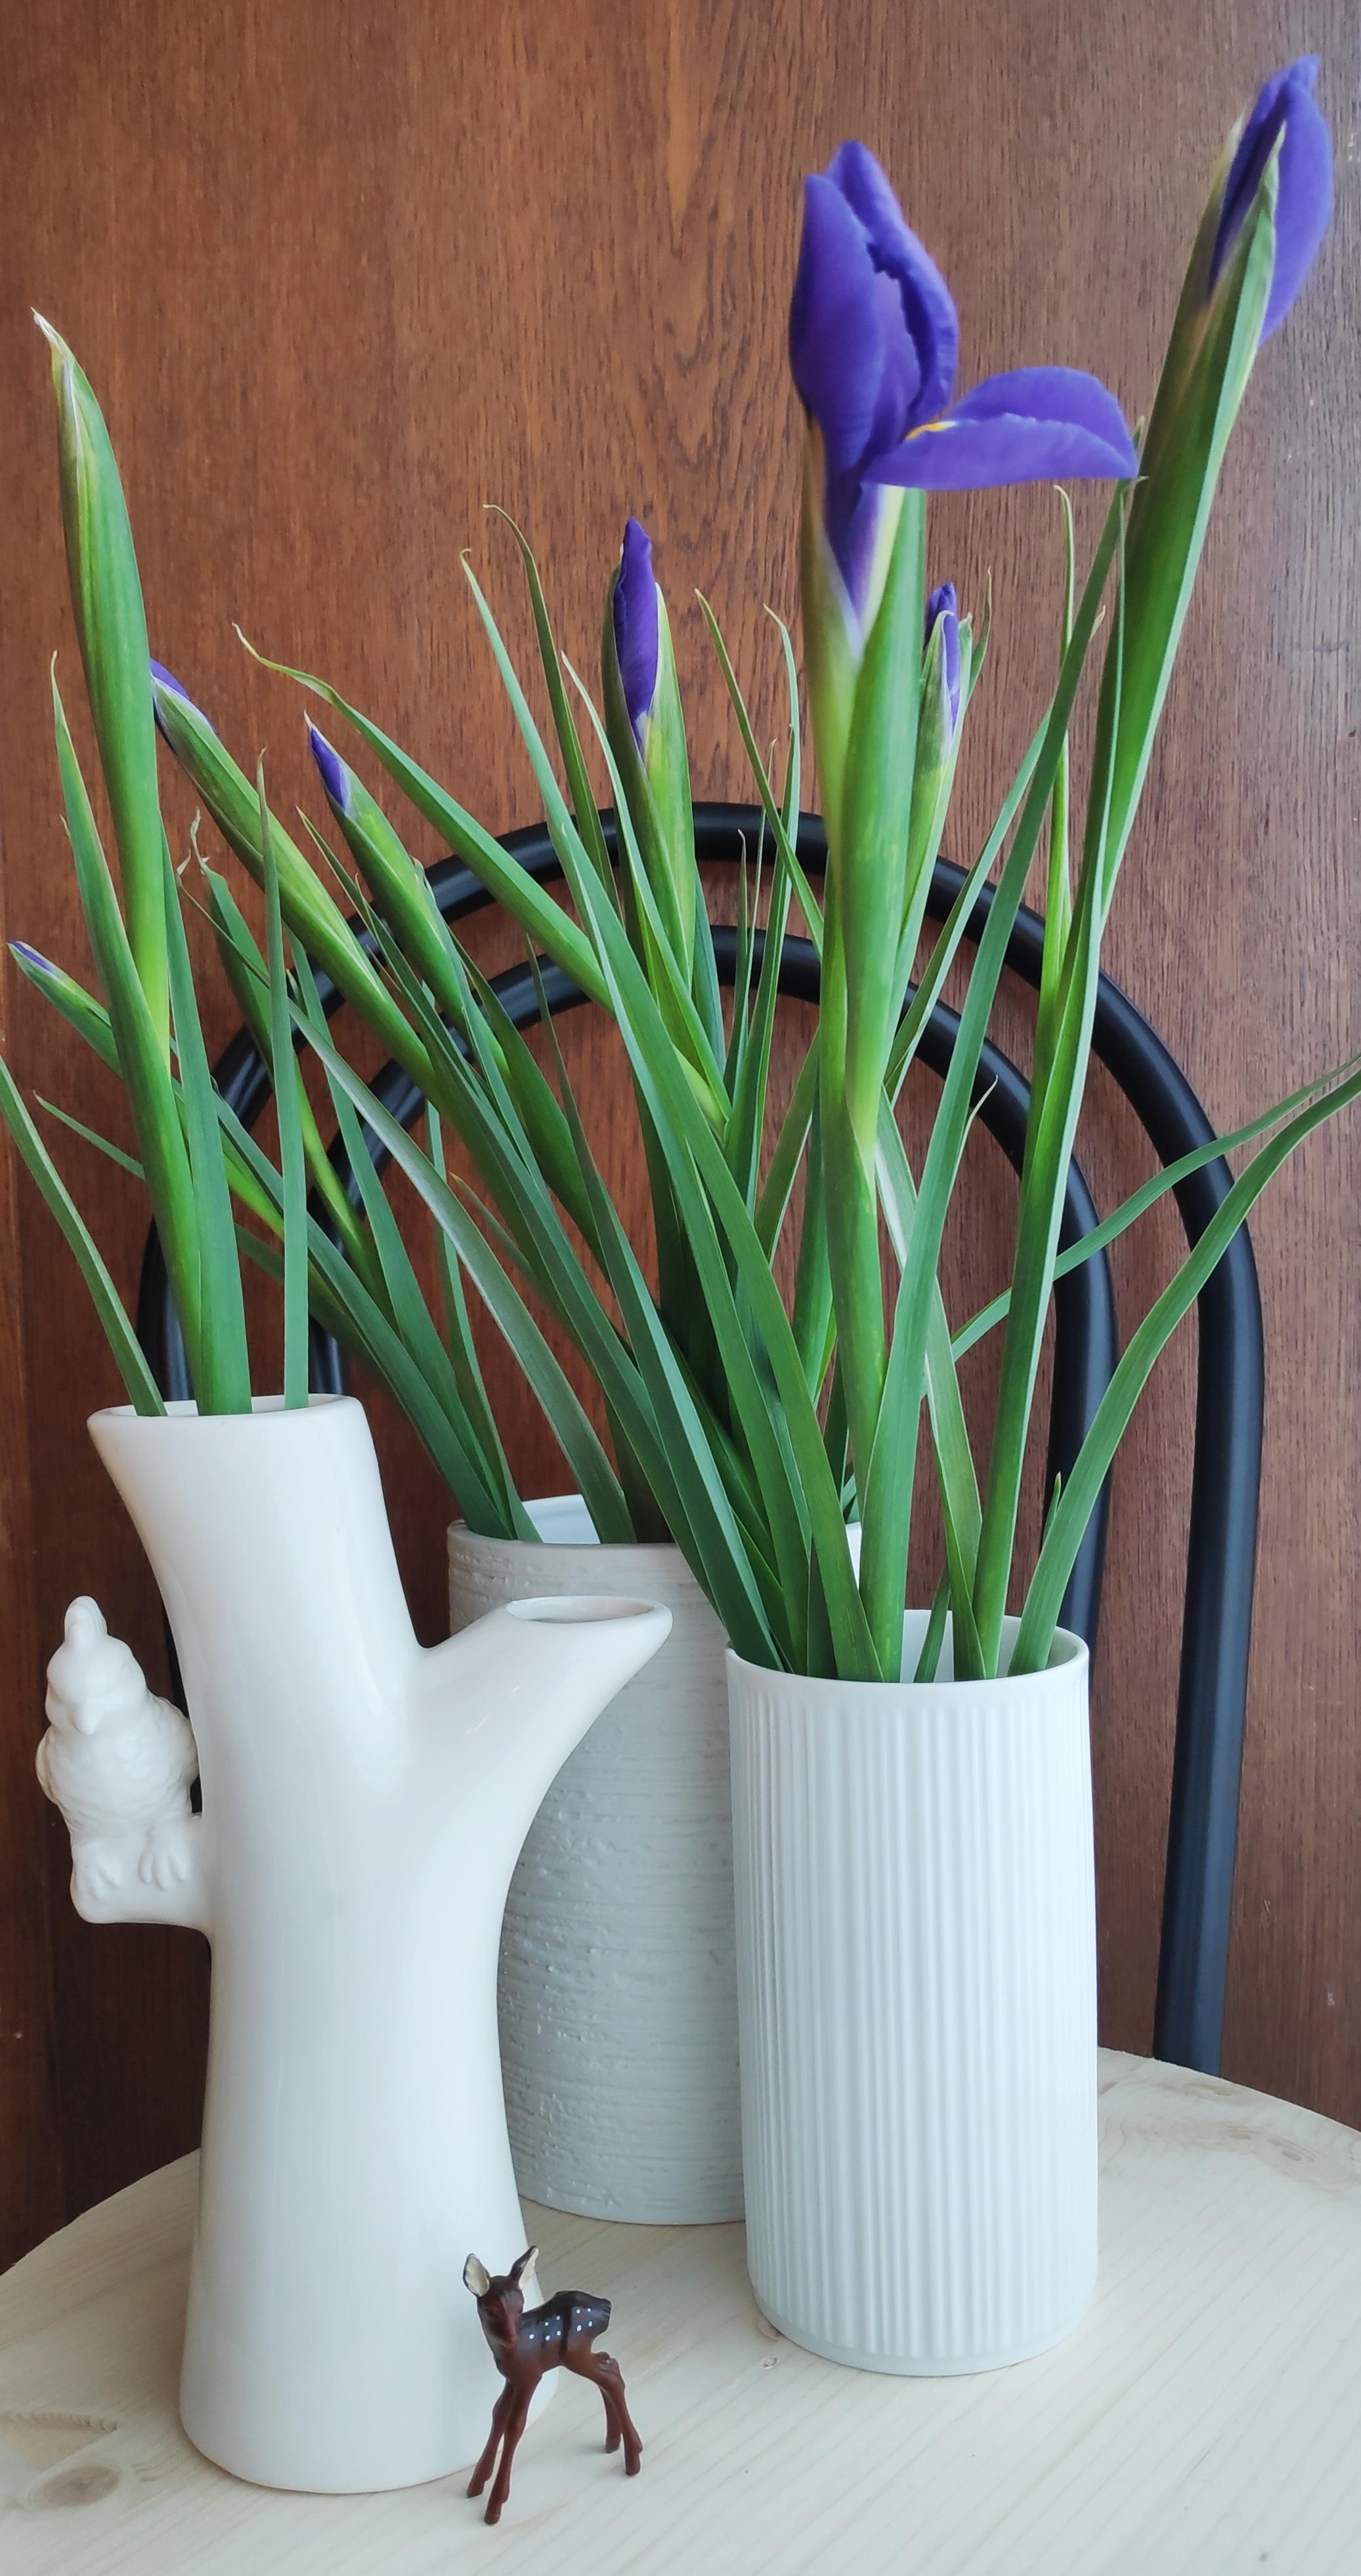 .Ich kann den Iris nicht widerstehen.
#Iris #Blumen #Vase